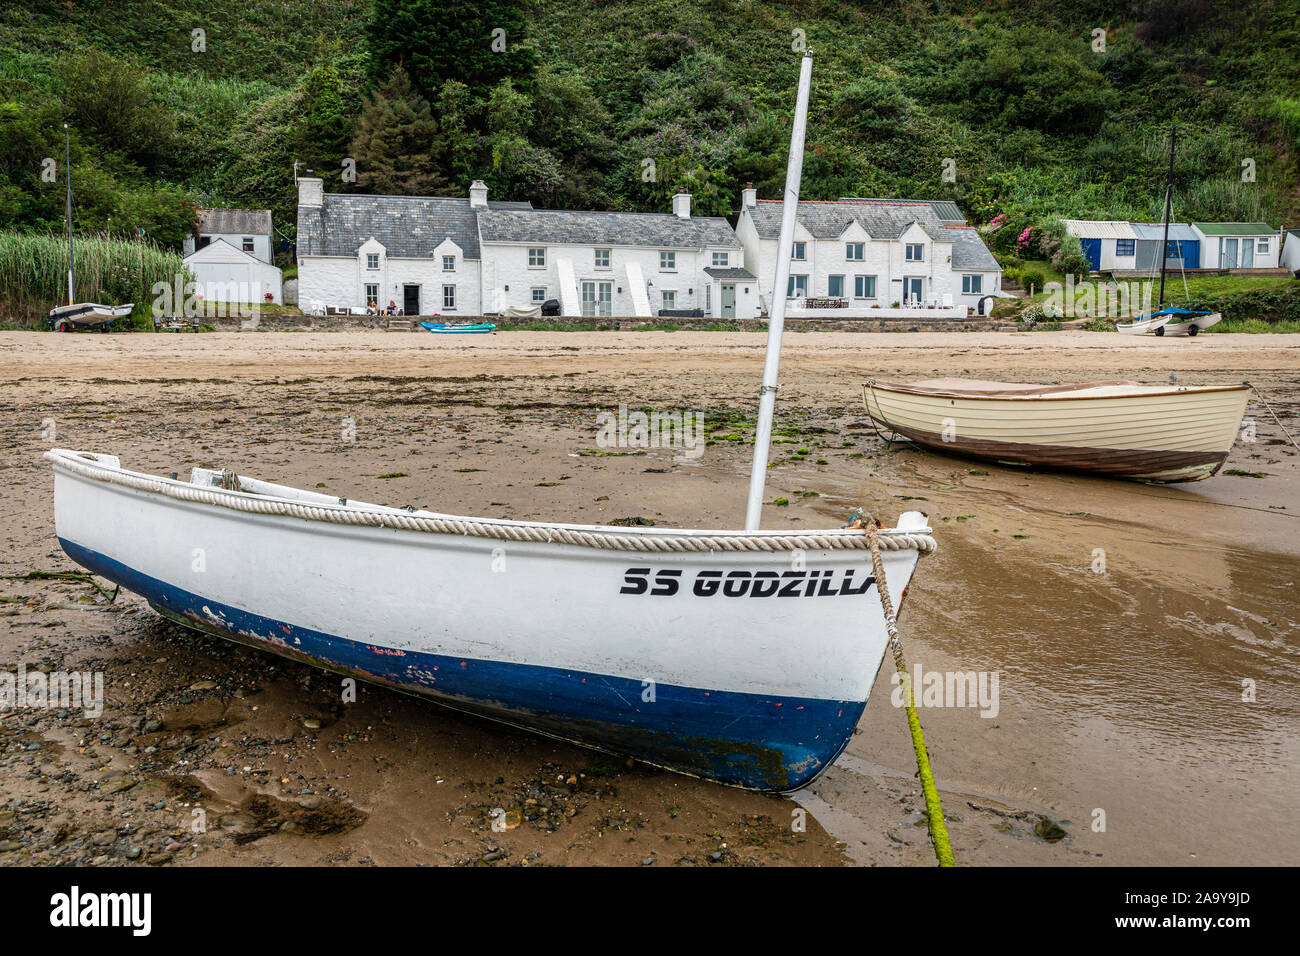 Boats on the beach at low tide, Nefyn, Llŷn Peninsula, Gwynedd, Wales Stock Photo